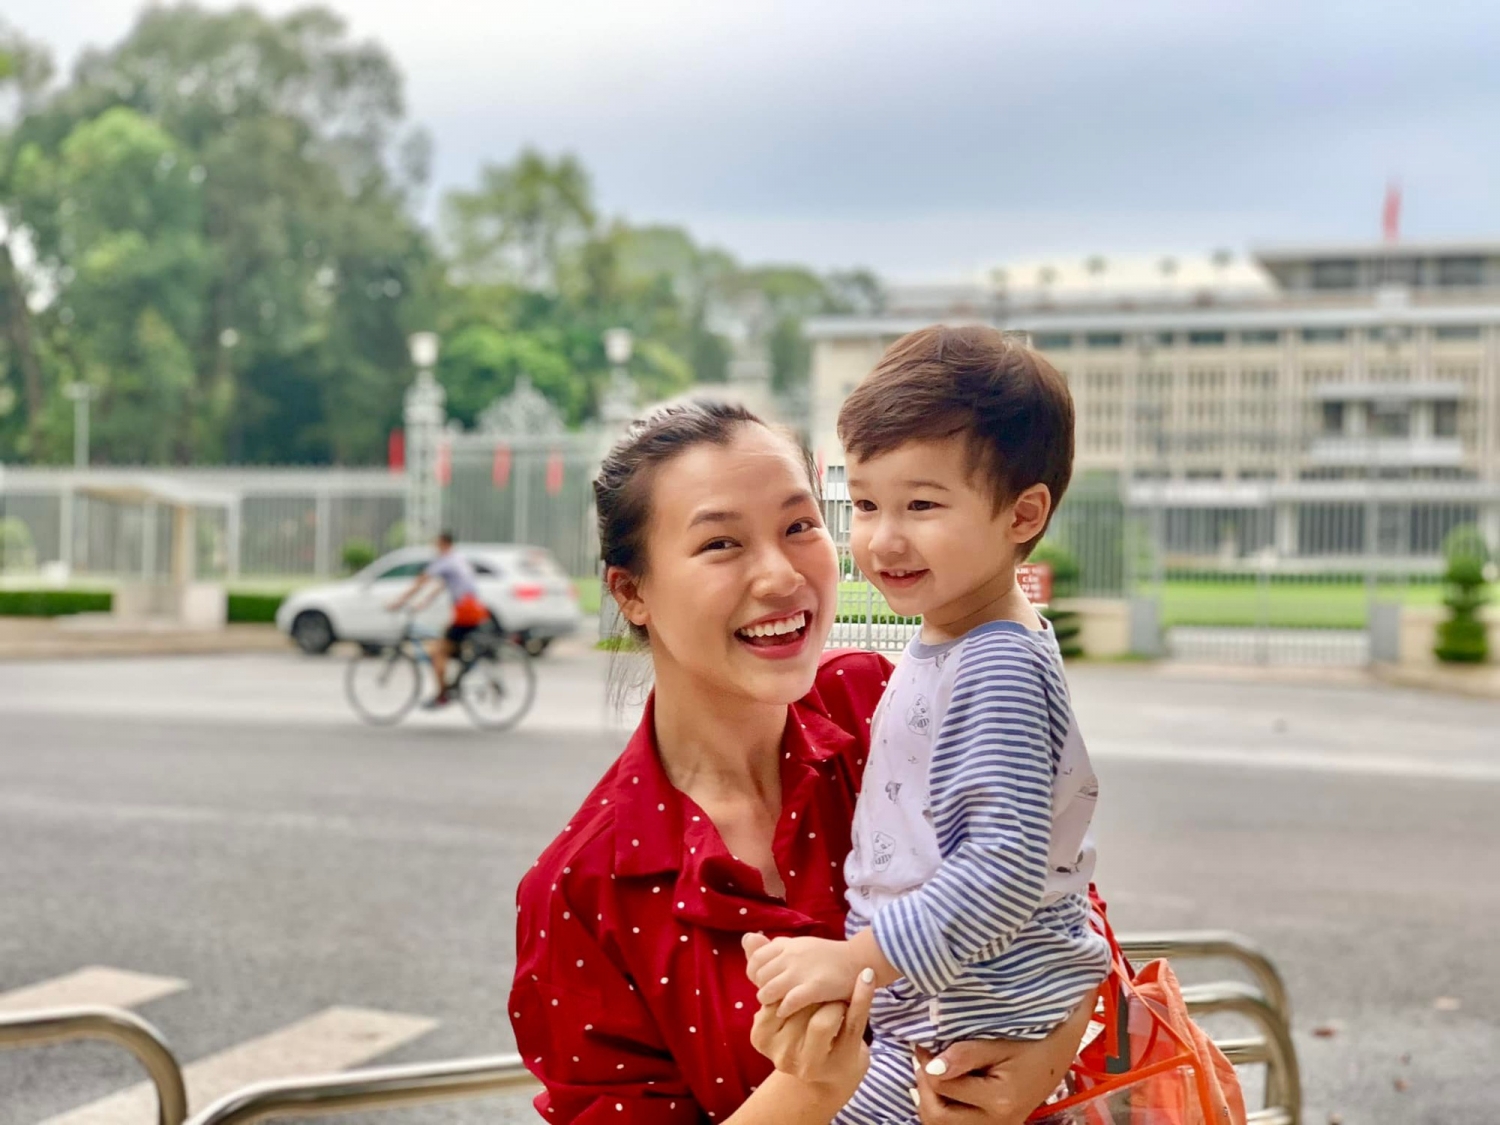 Sao Việt hôm nay 29/7: Hoàng Oanh hiếm hoi tiết lộ chuyện ly hôn với chồng ngoại quốc